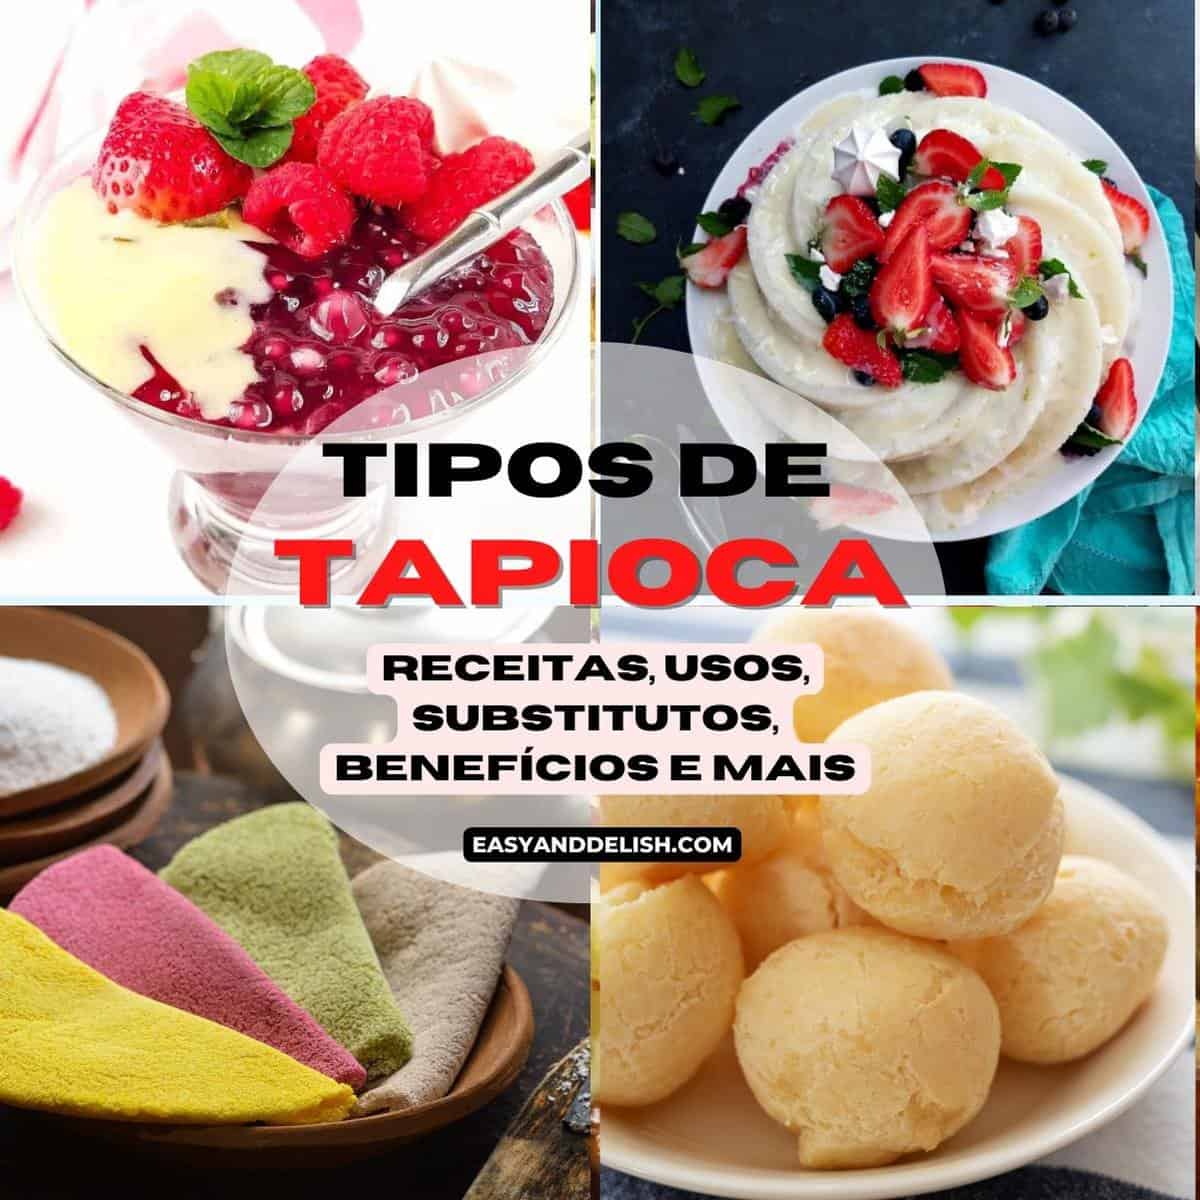 Beiju de tapioca (Tapioca Crepes) - Sabor Brasil